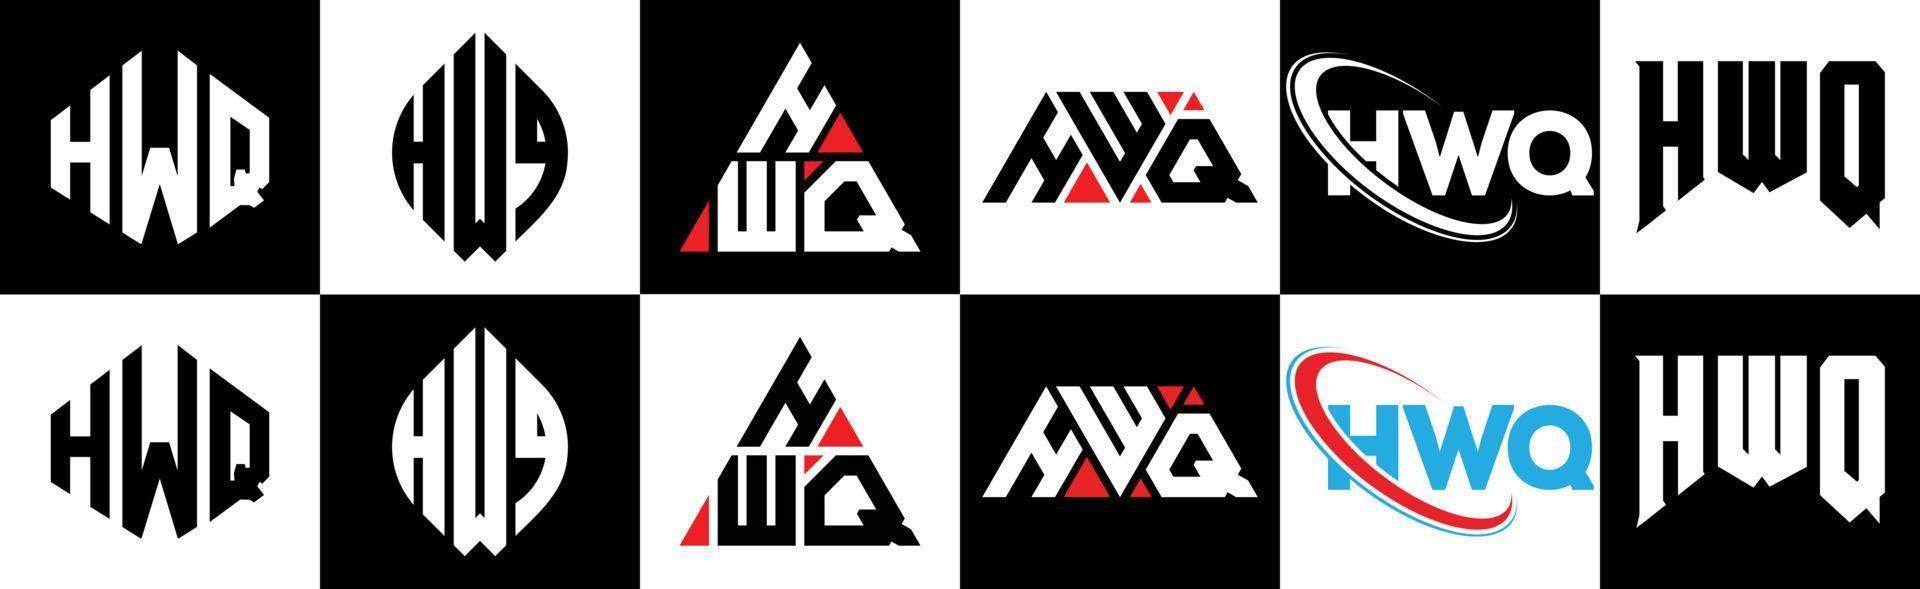 design de logotipo de letra hwq em seis estilos. hwq polígono, círculo, triângulo, hexágono, estilo plano e simples com logotipo de carta de variação de cor preto e branco definido em uma prancheta. logotipo minimalista e clássico hwq vetor